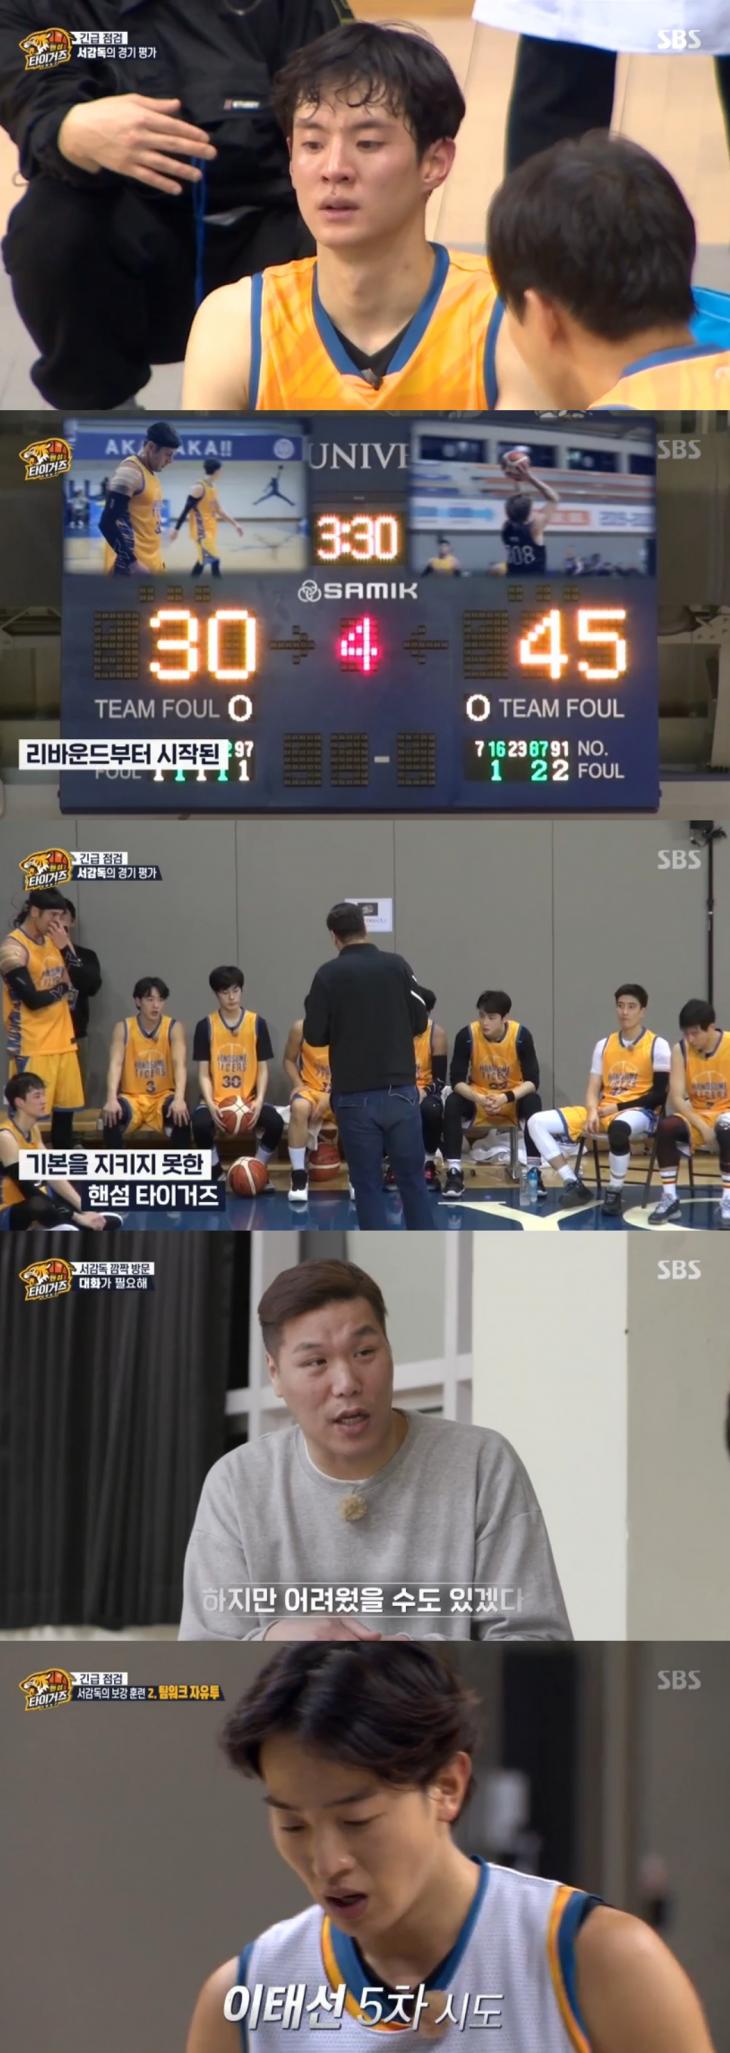 SBS 예능프로그램 '진짜 농구 핸섬 타이거즈'